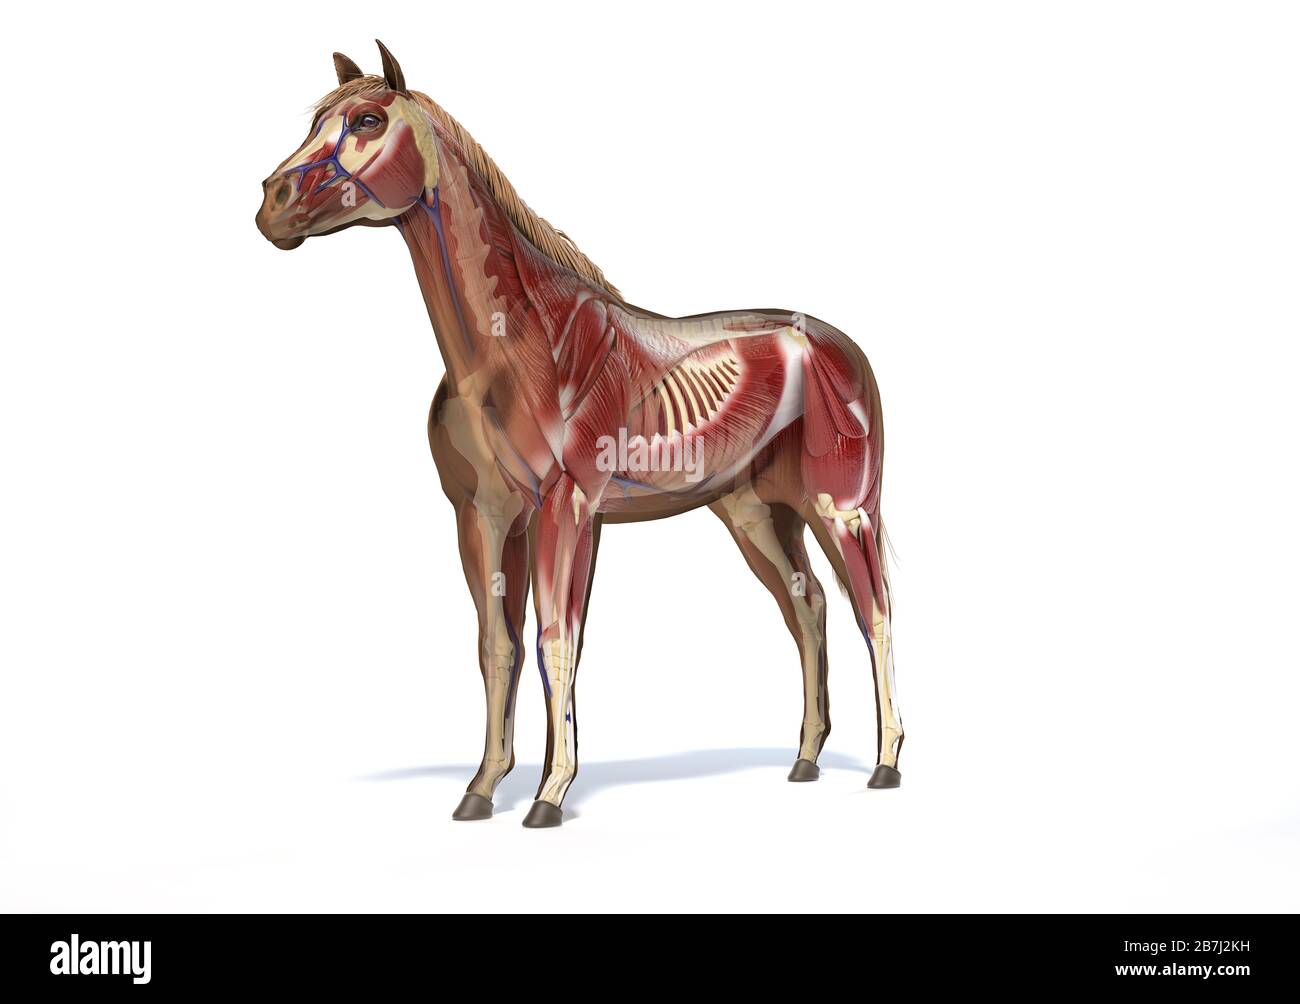 Pferdeanatomie. Muskel- und Skelettsysteme mit Geistereffekt. Vorderansicht - Seitenansicht auf weißem Hintergrund. Beschneidungspfad enthalten. Stockfoto